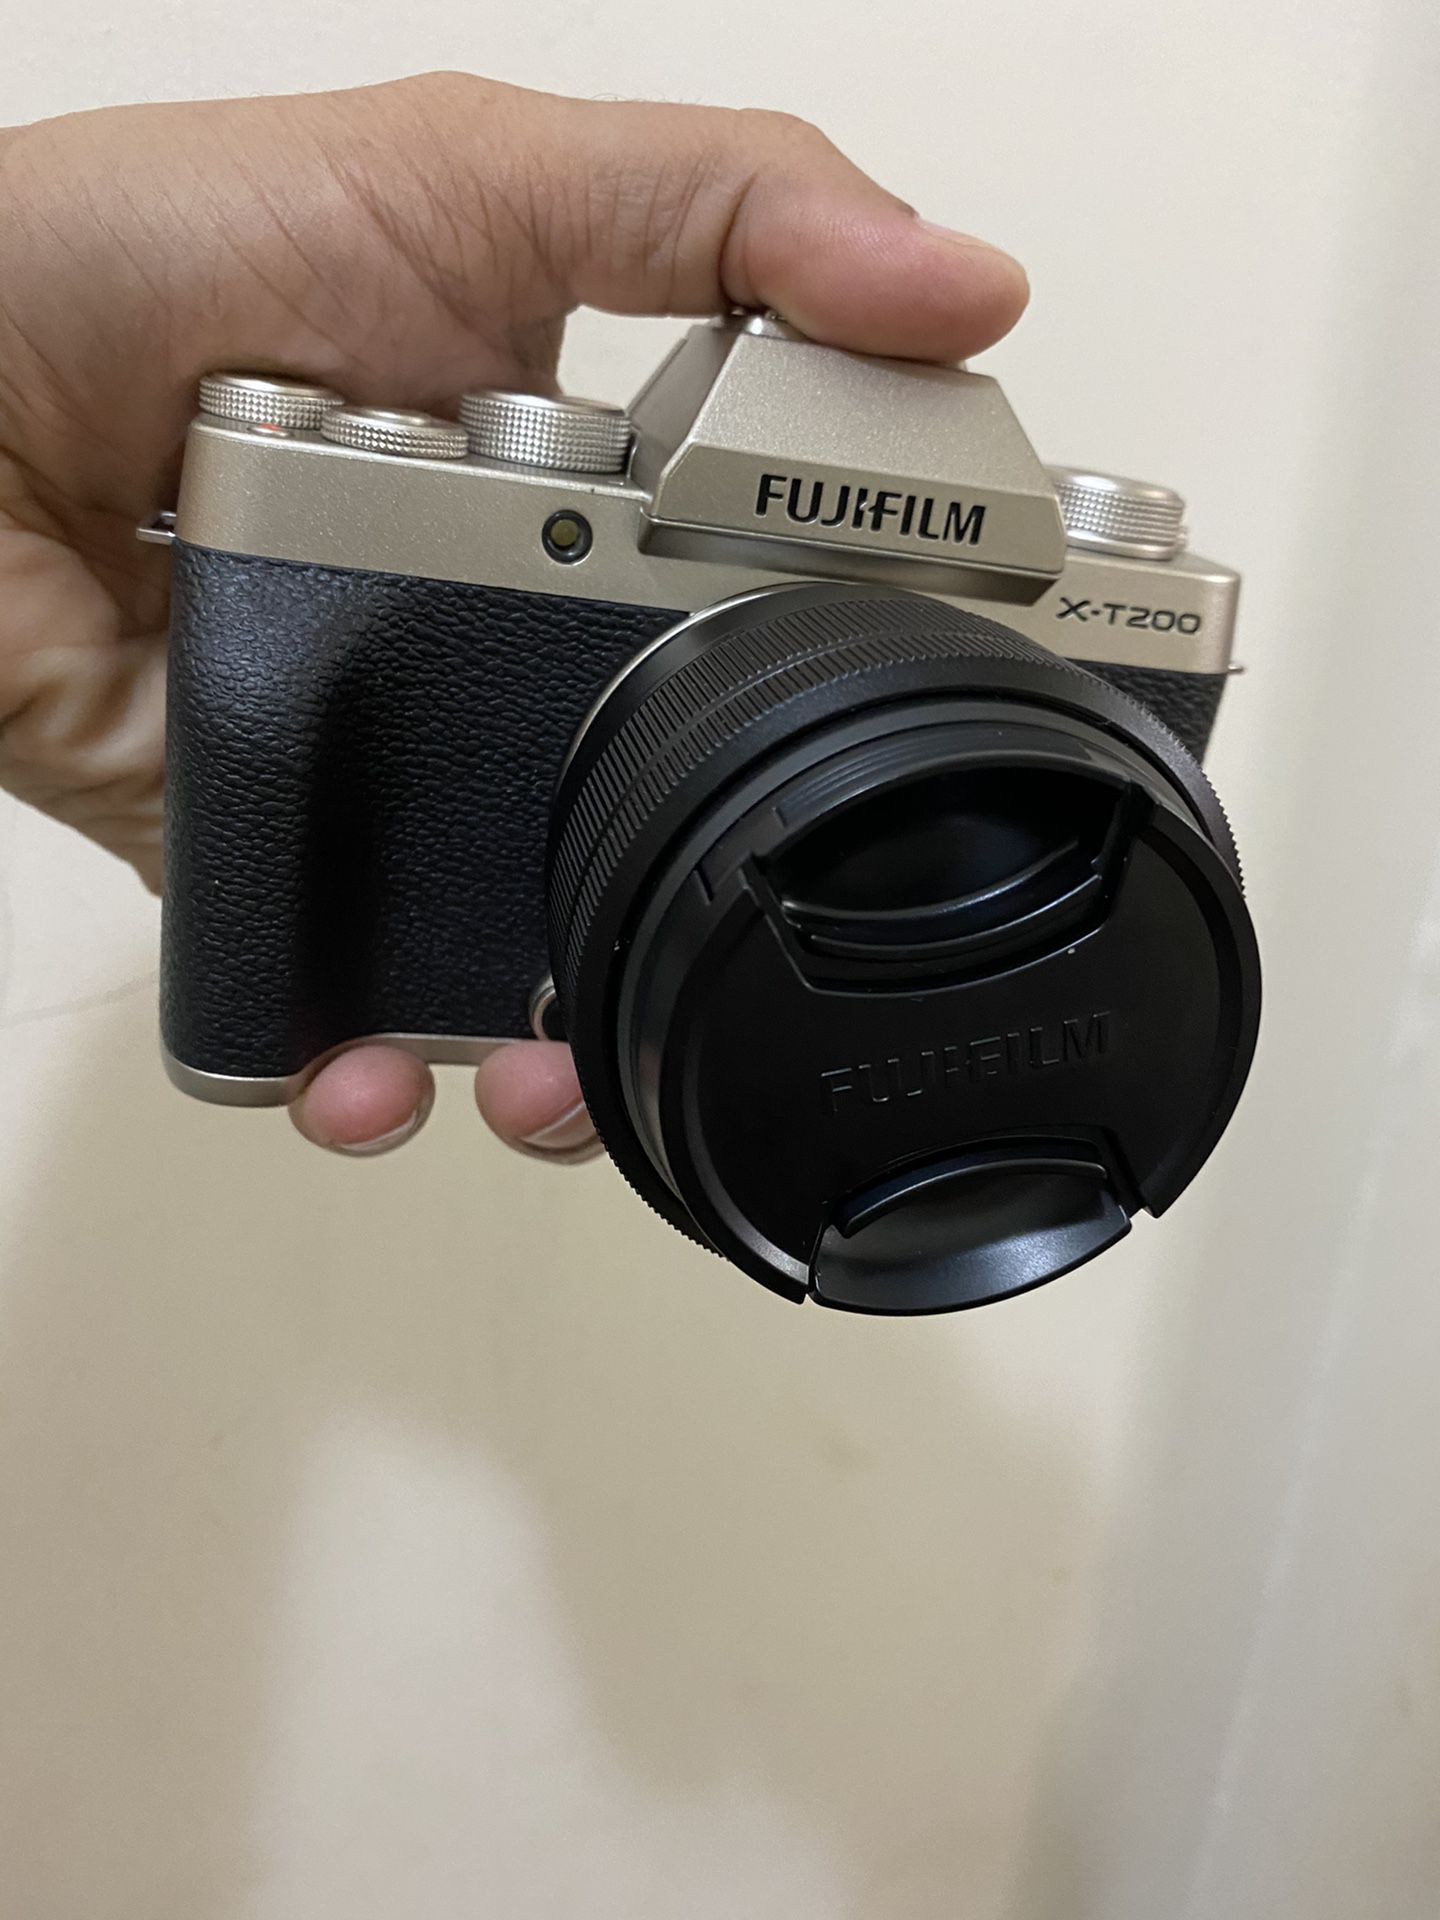 Fujifilm xt200 camera